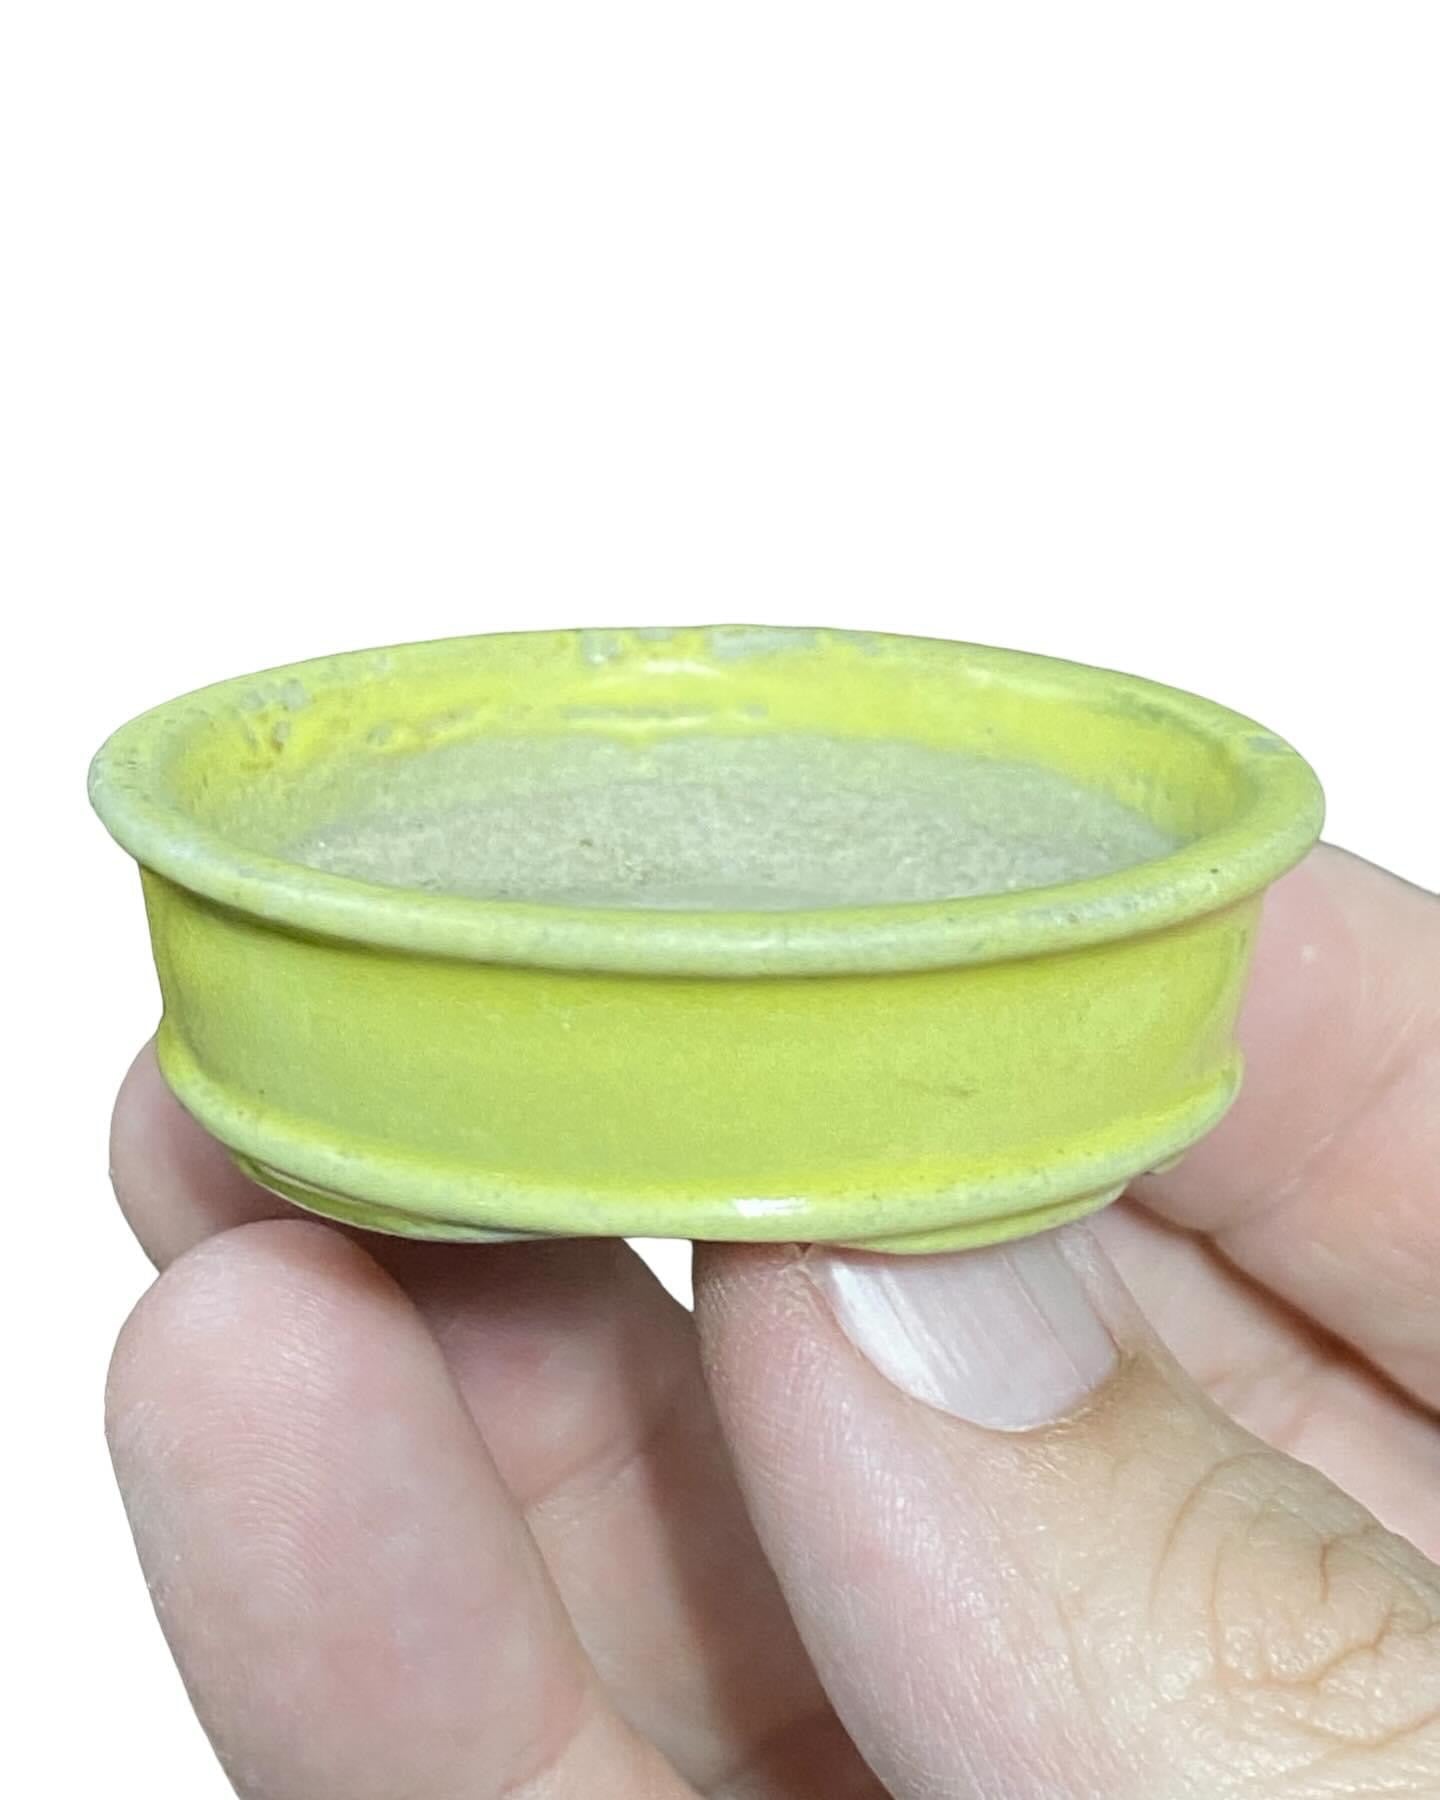 Katu - Bright Yellow Mame Bonsai Pot (2-1/8” wide)